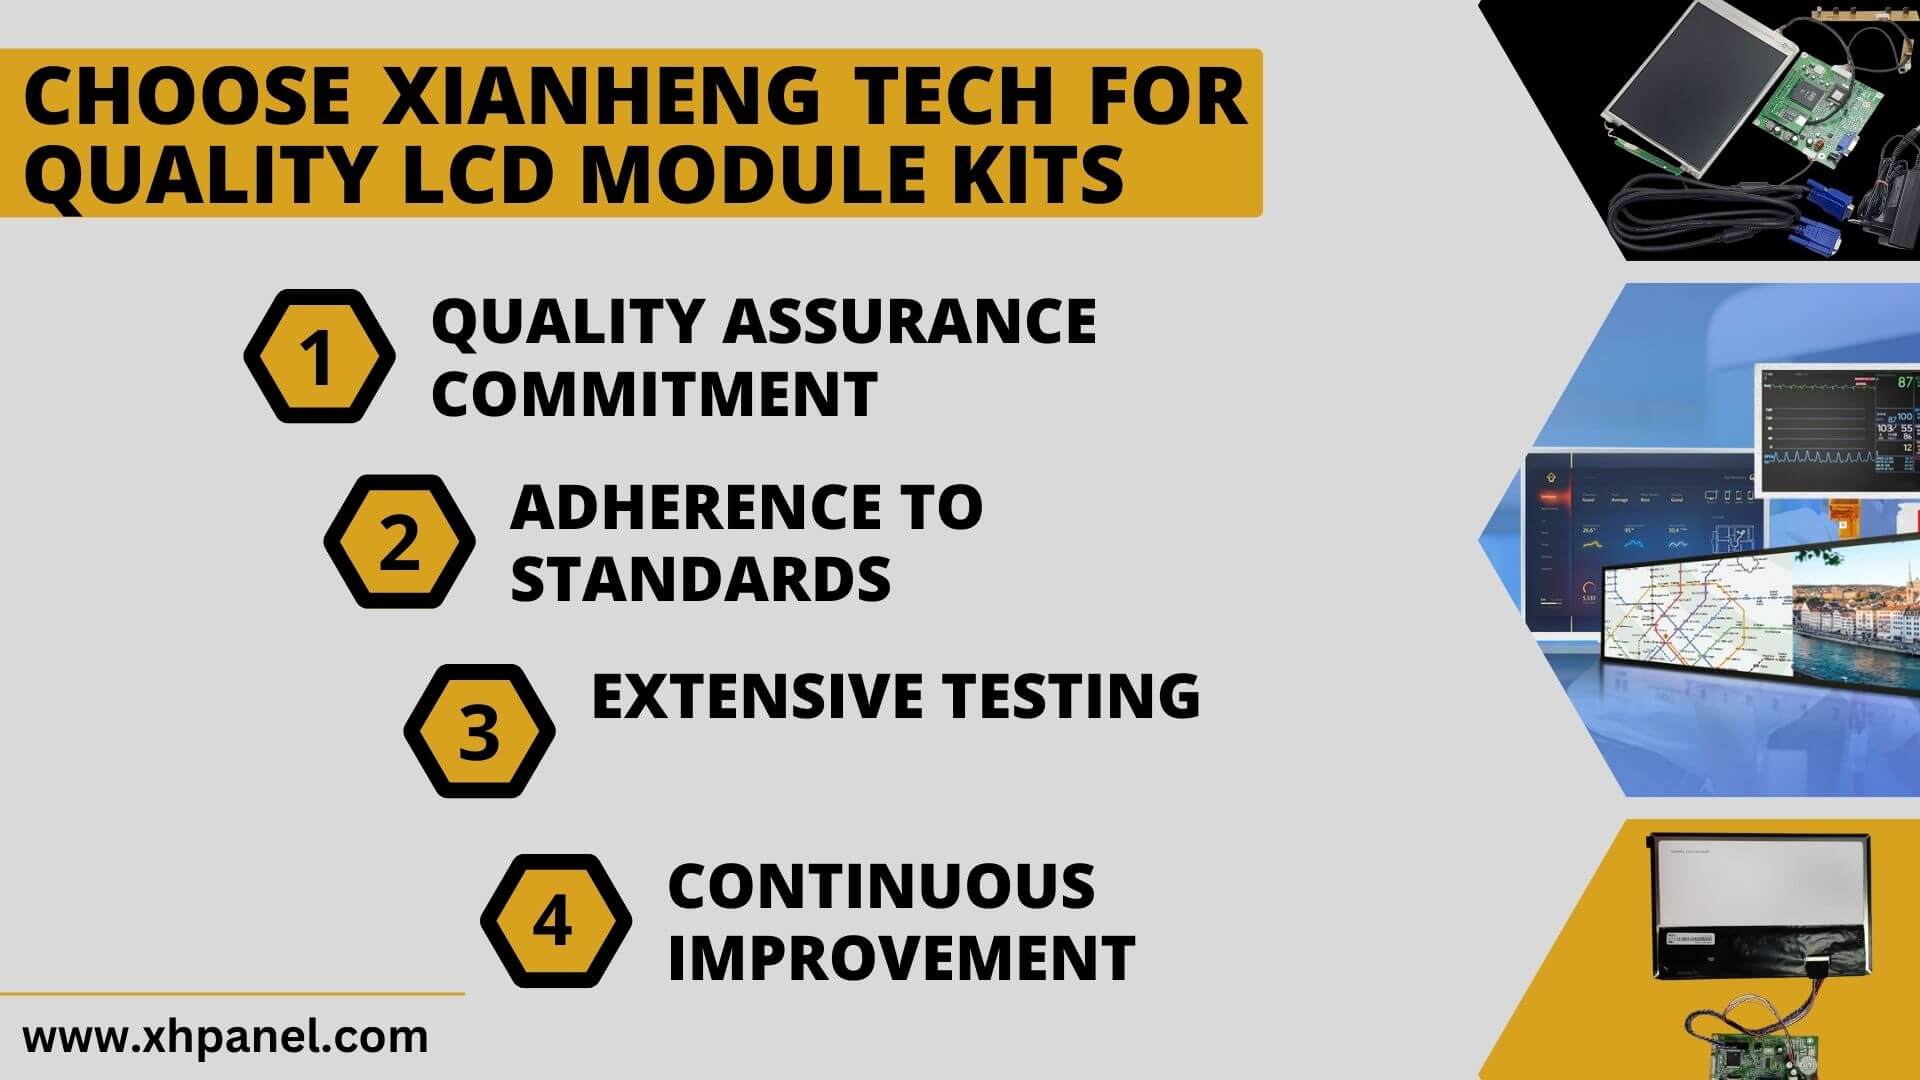 Choose XIANHENG TECH for Quality LCD Module Kits